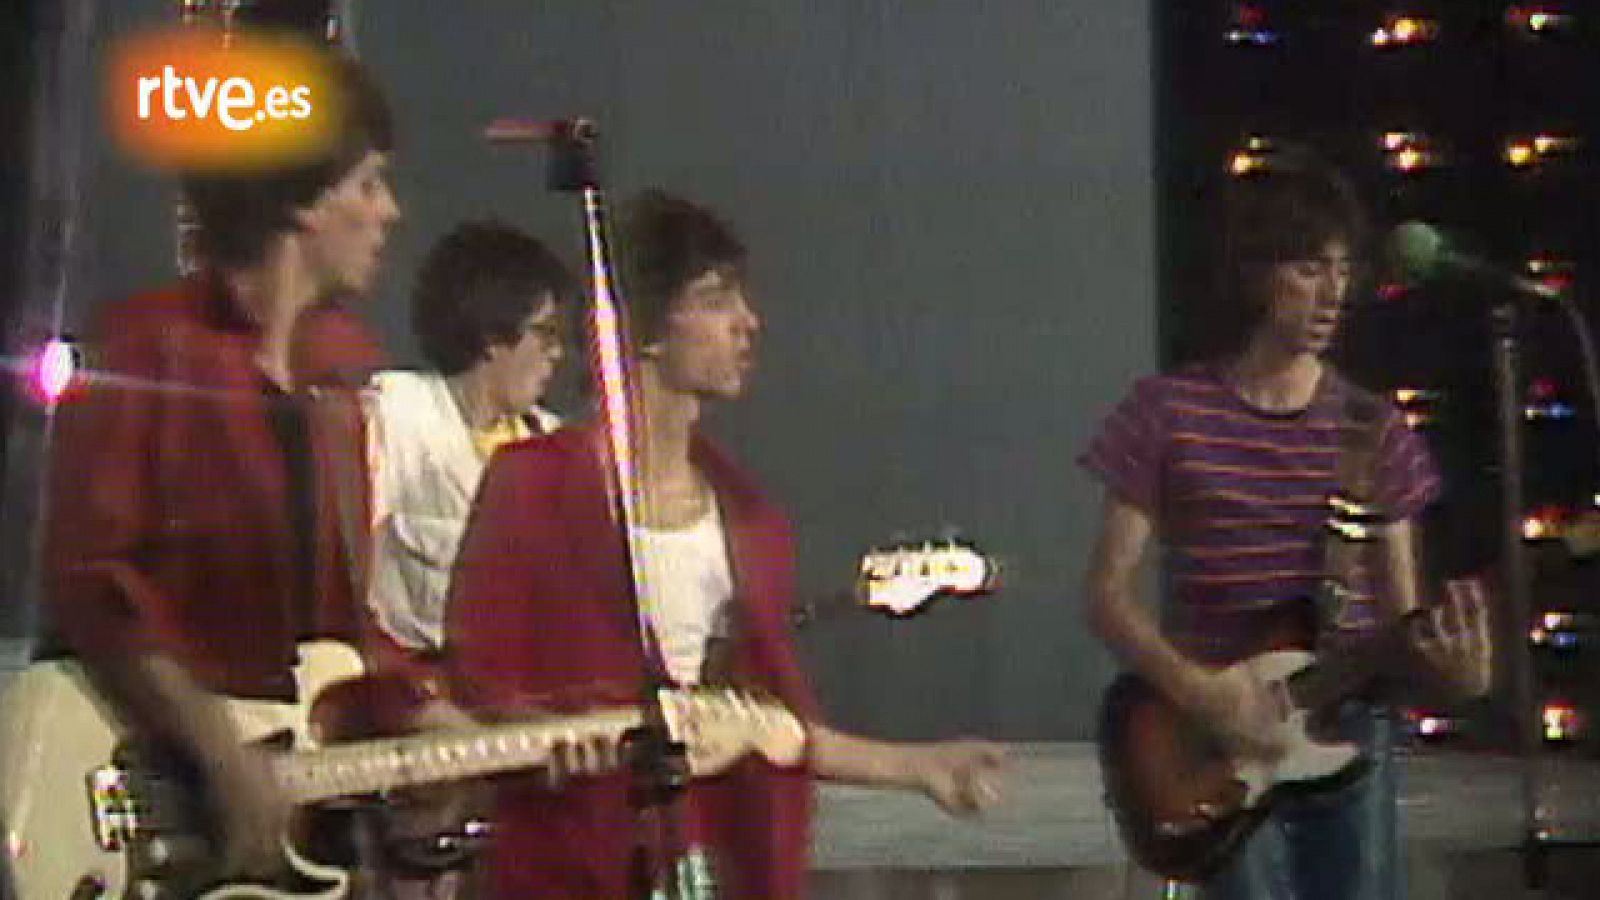 El grupo Tequila interpreta "Me vuelvo loco", uno de los éxitos musicales de 1979.